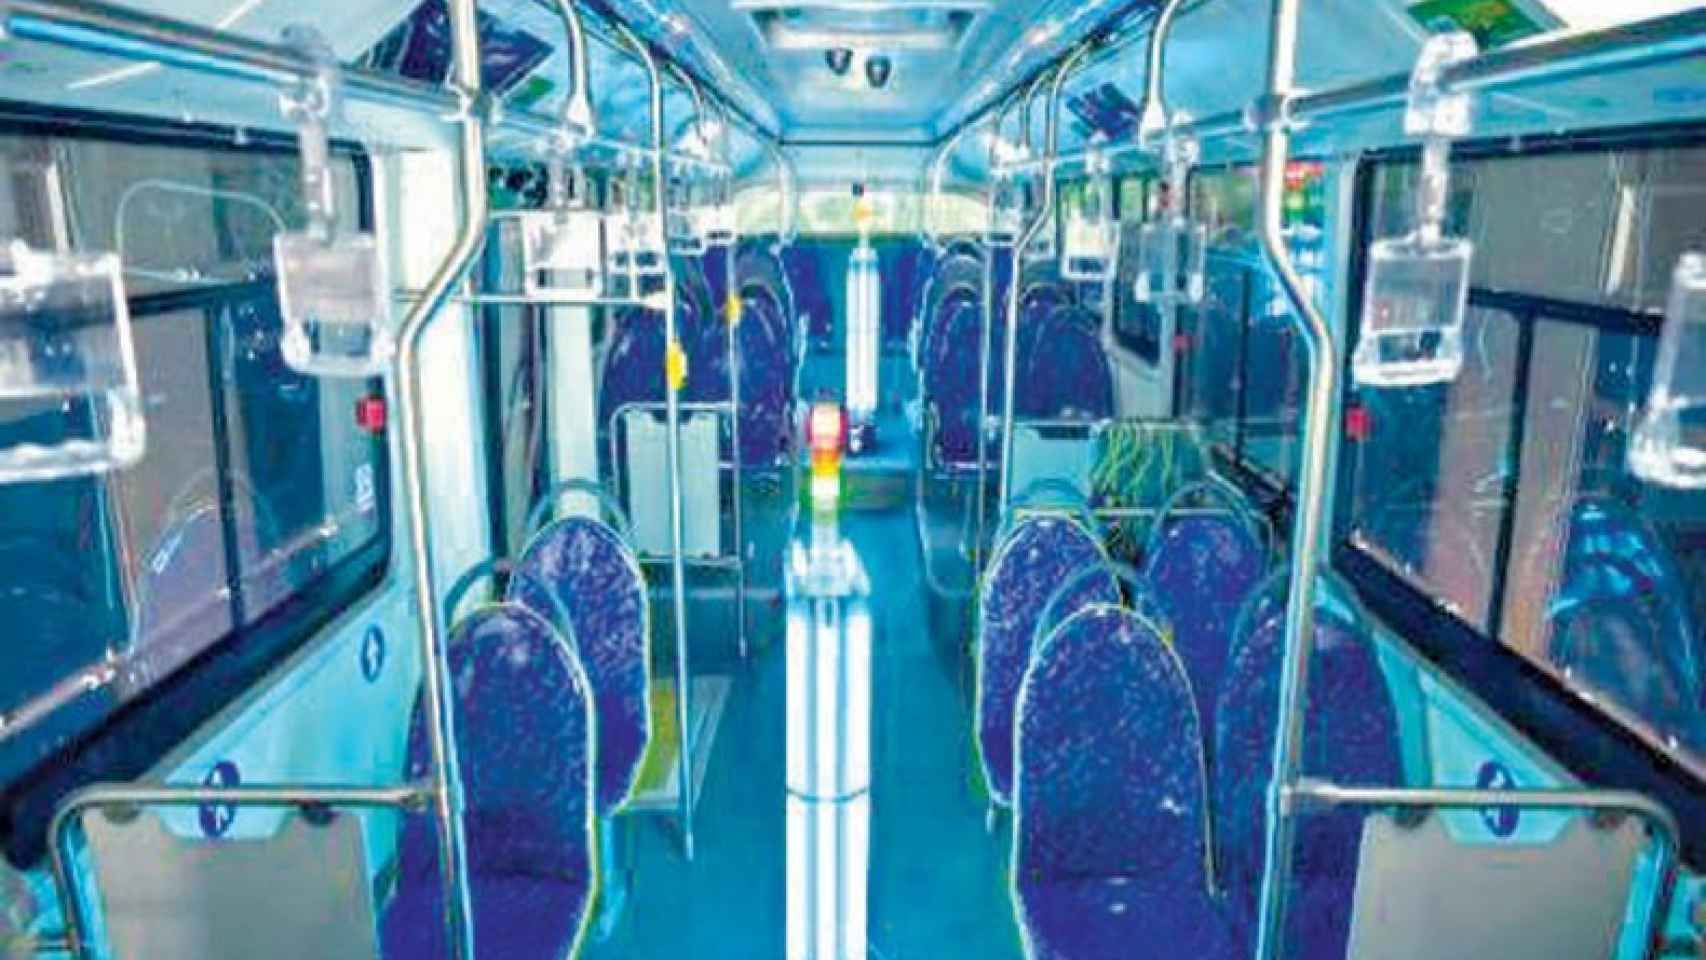 En China usan luz ultravioleta para desinfectar autobuses.